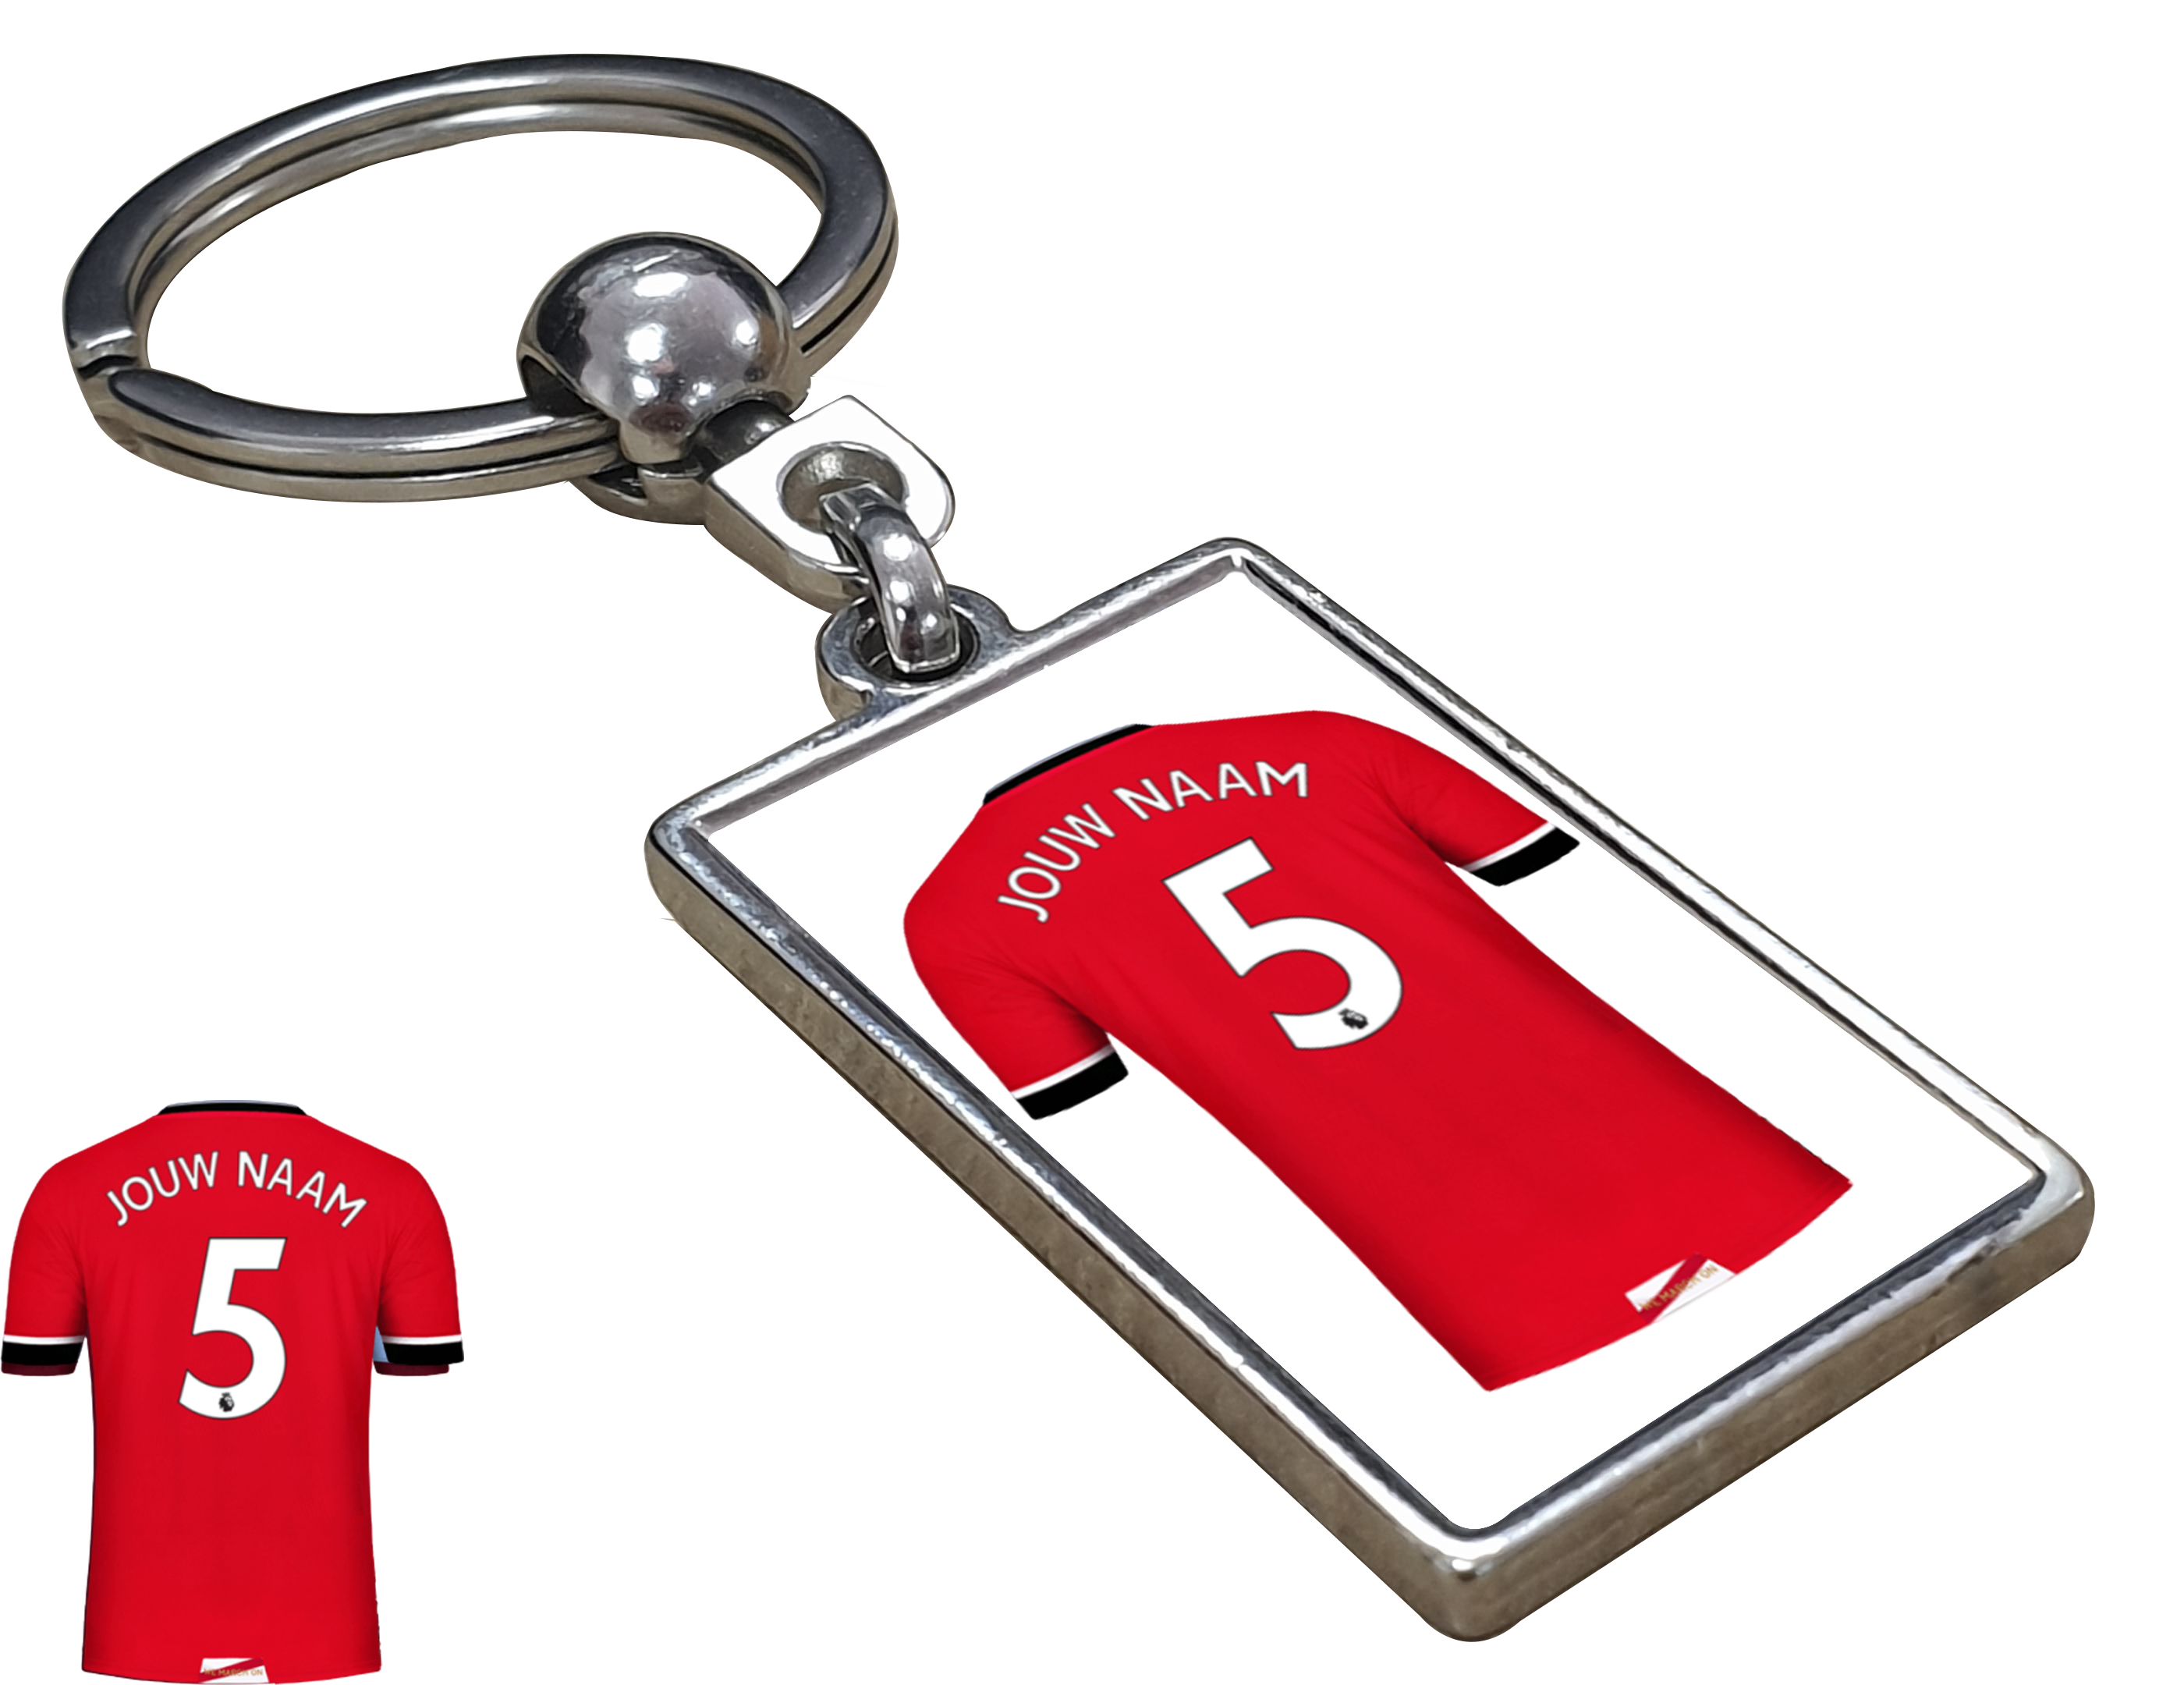 Southampton Shirt met Jouw Naam - Seizoen 20/21 - Gepersonaliseerde Sleutelhanger met Jouw Naam en Nummer